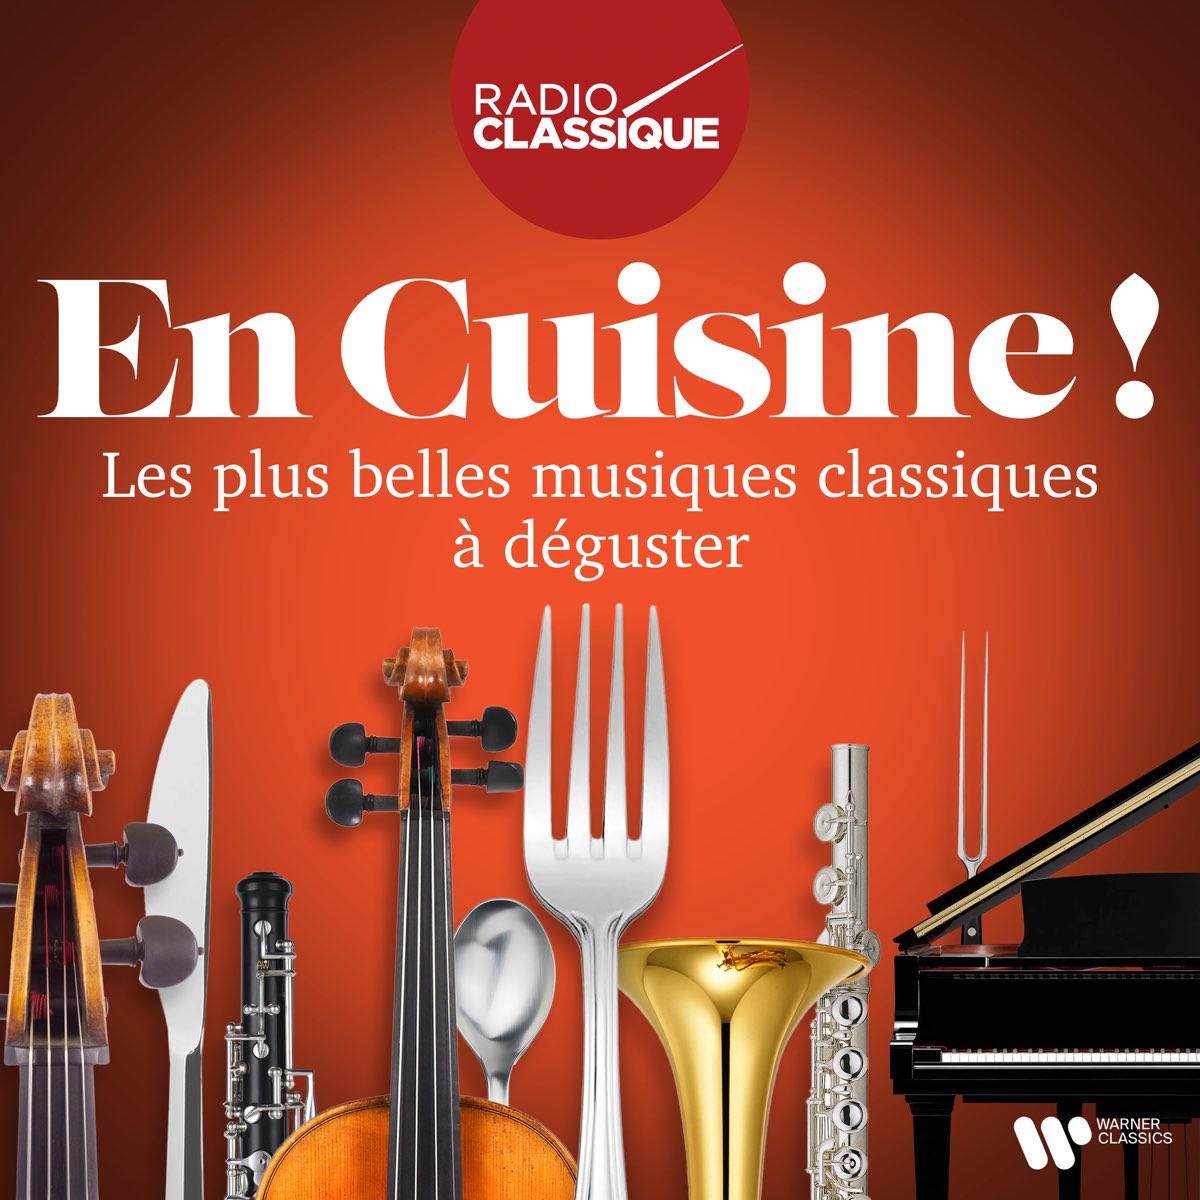 En cuisine ! Les plus belles musiques classiques à déguster (Radio Classique)  – Album par Multi-interprètes – Apple Music